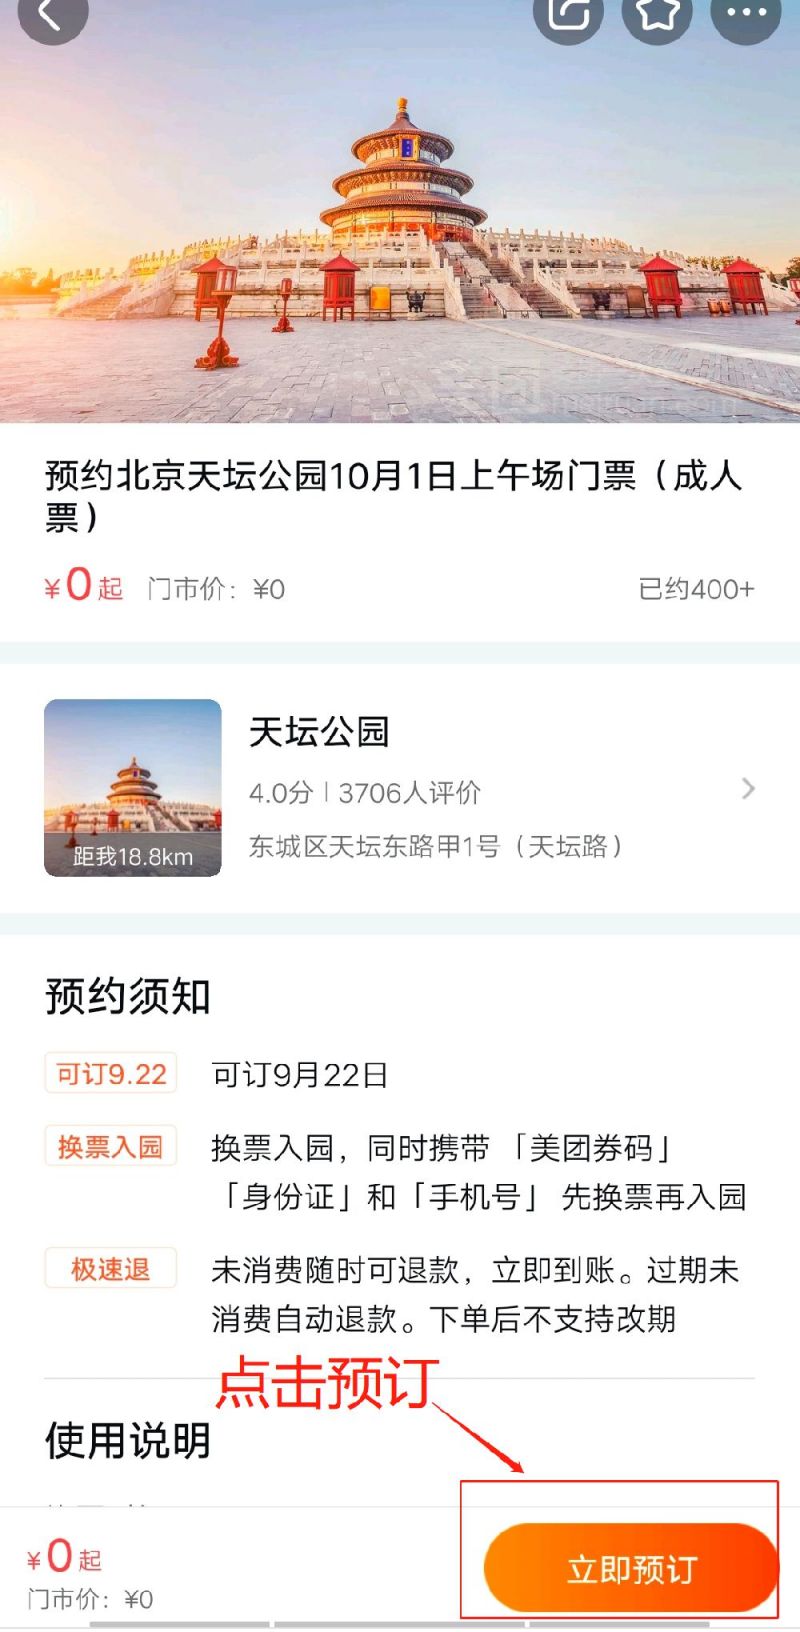 2021北京国庆天坛公园游园活动时间 门票预约指南